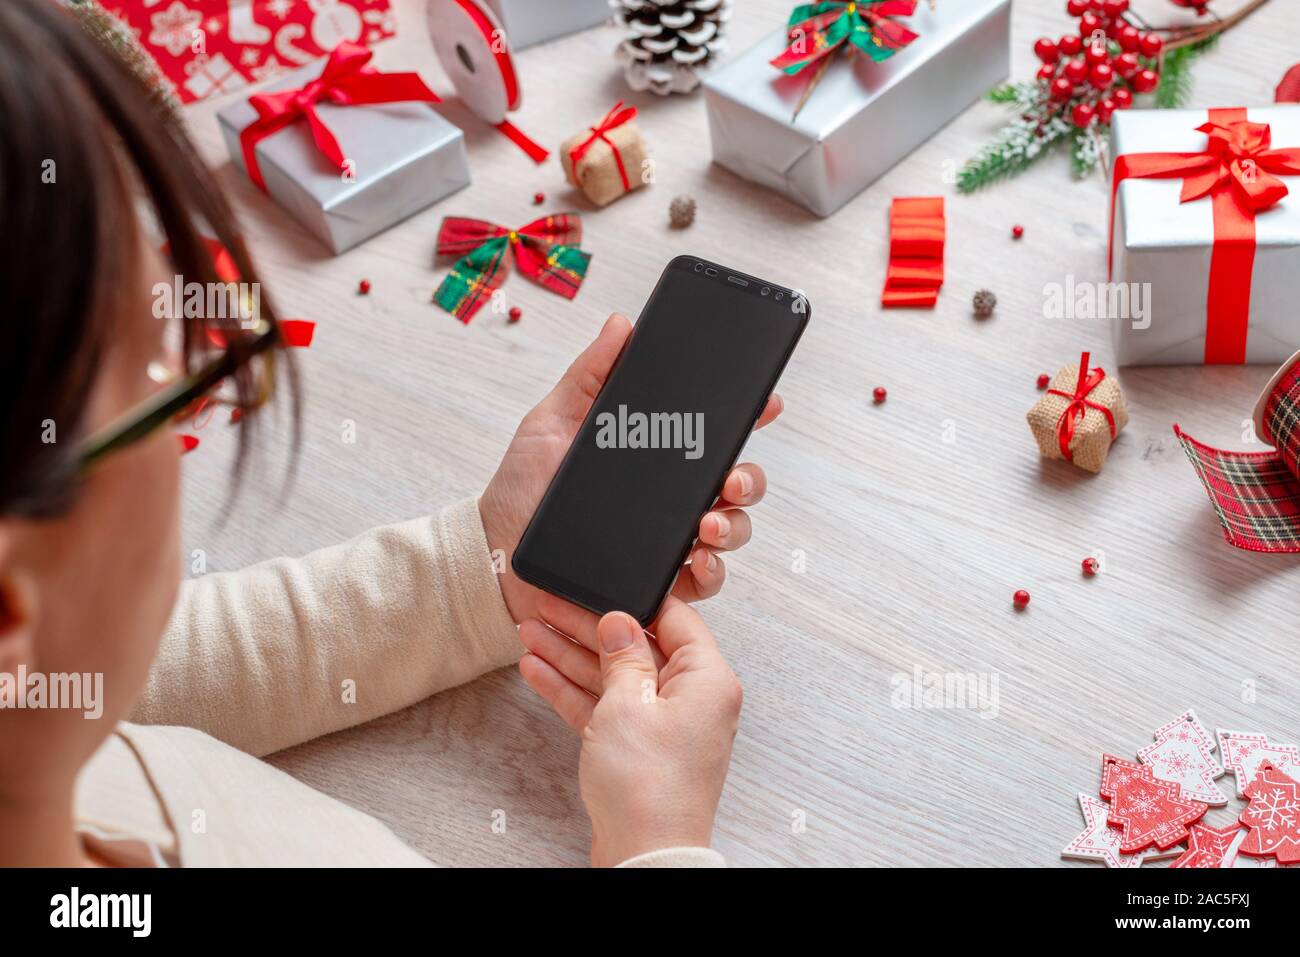 Chica sujetando un teléfono con pantalla en blanco para el boceto, rodeado por Navidad y Año Nuevo regalos y decoraciones. Foto de stock